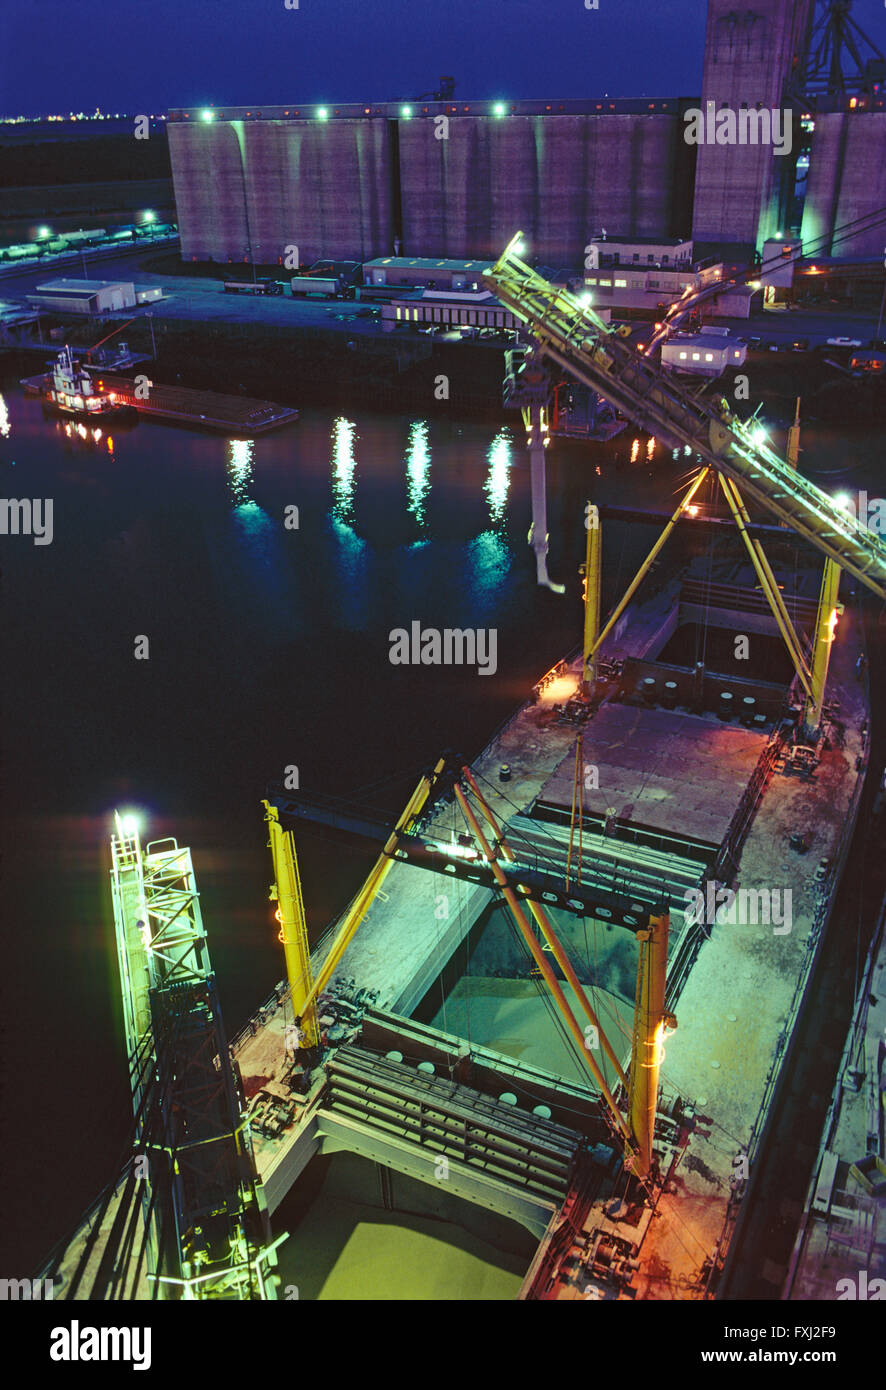 Vue de la nuit de chargement du grain à partir de silos sur un navire cargo dans le chenal de Houston au Texas ; Texas ; USA Banque D'Images